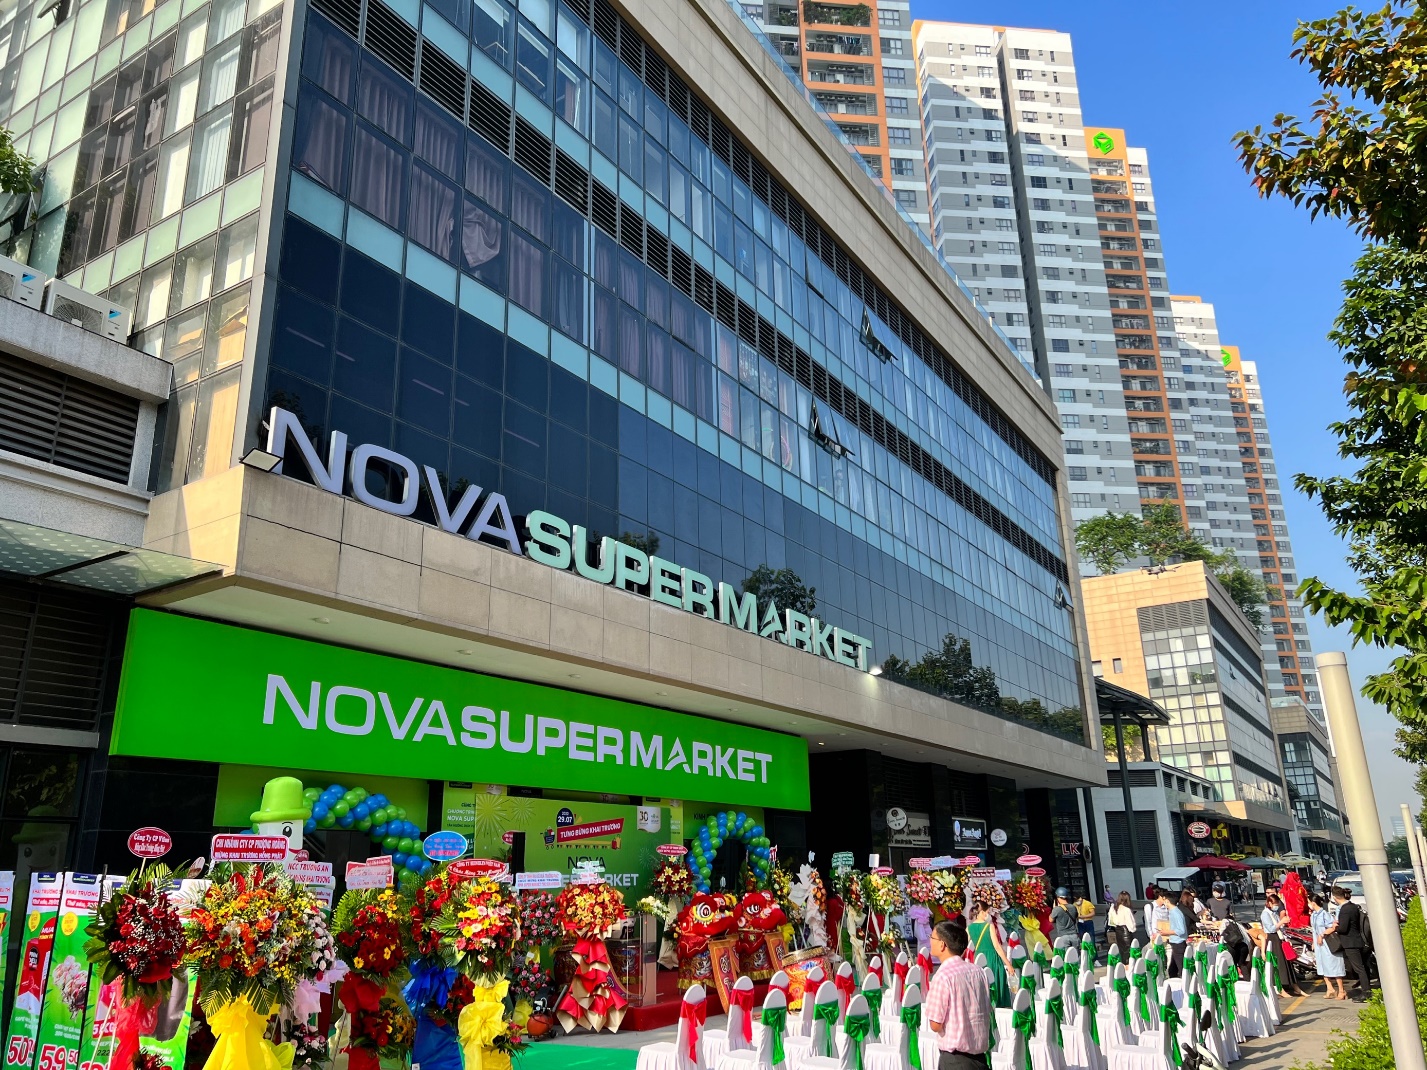 Siêu thị Nova Supermarket đầu tiên vừa được ra mắt là bước tiến tiếp theo trong kế hoạch phát triển chuỗi bán lẻ quy mô toàn quốc của Nova Commerce, một thành viên của Nova Service